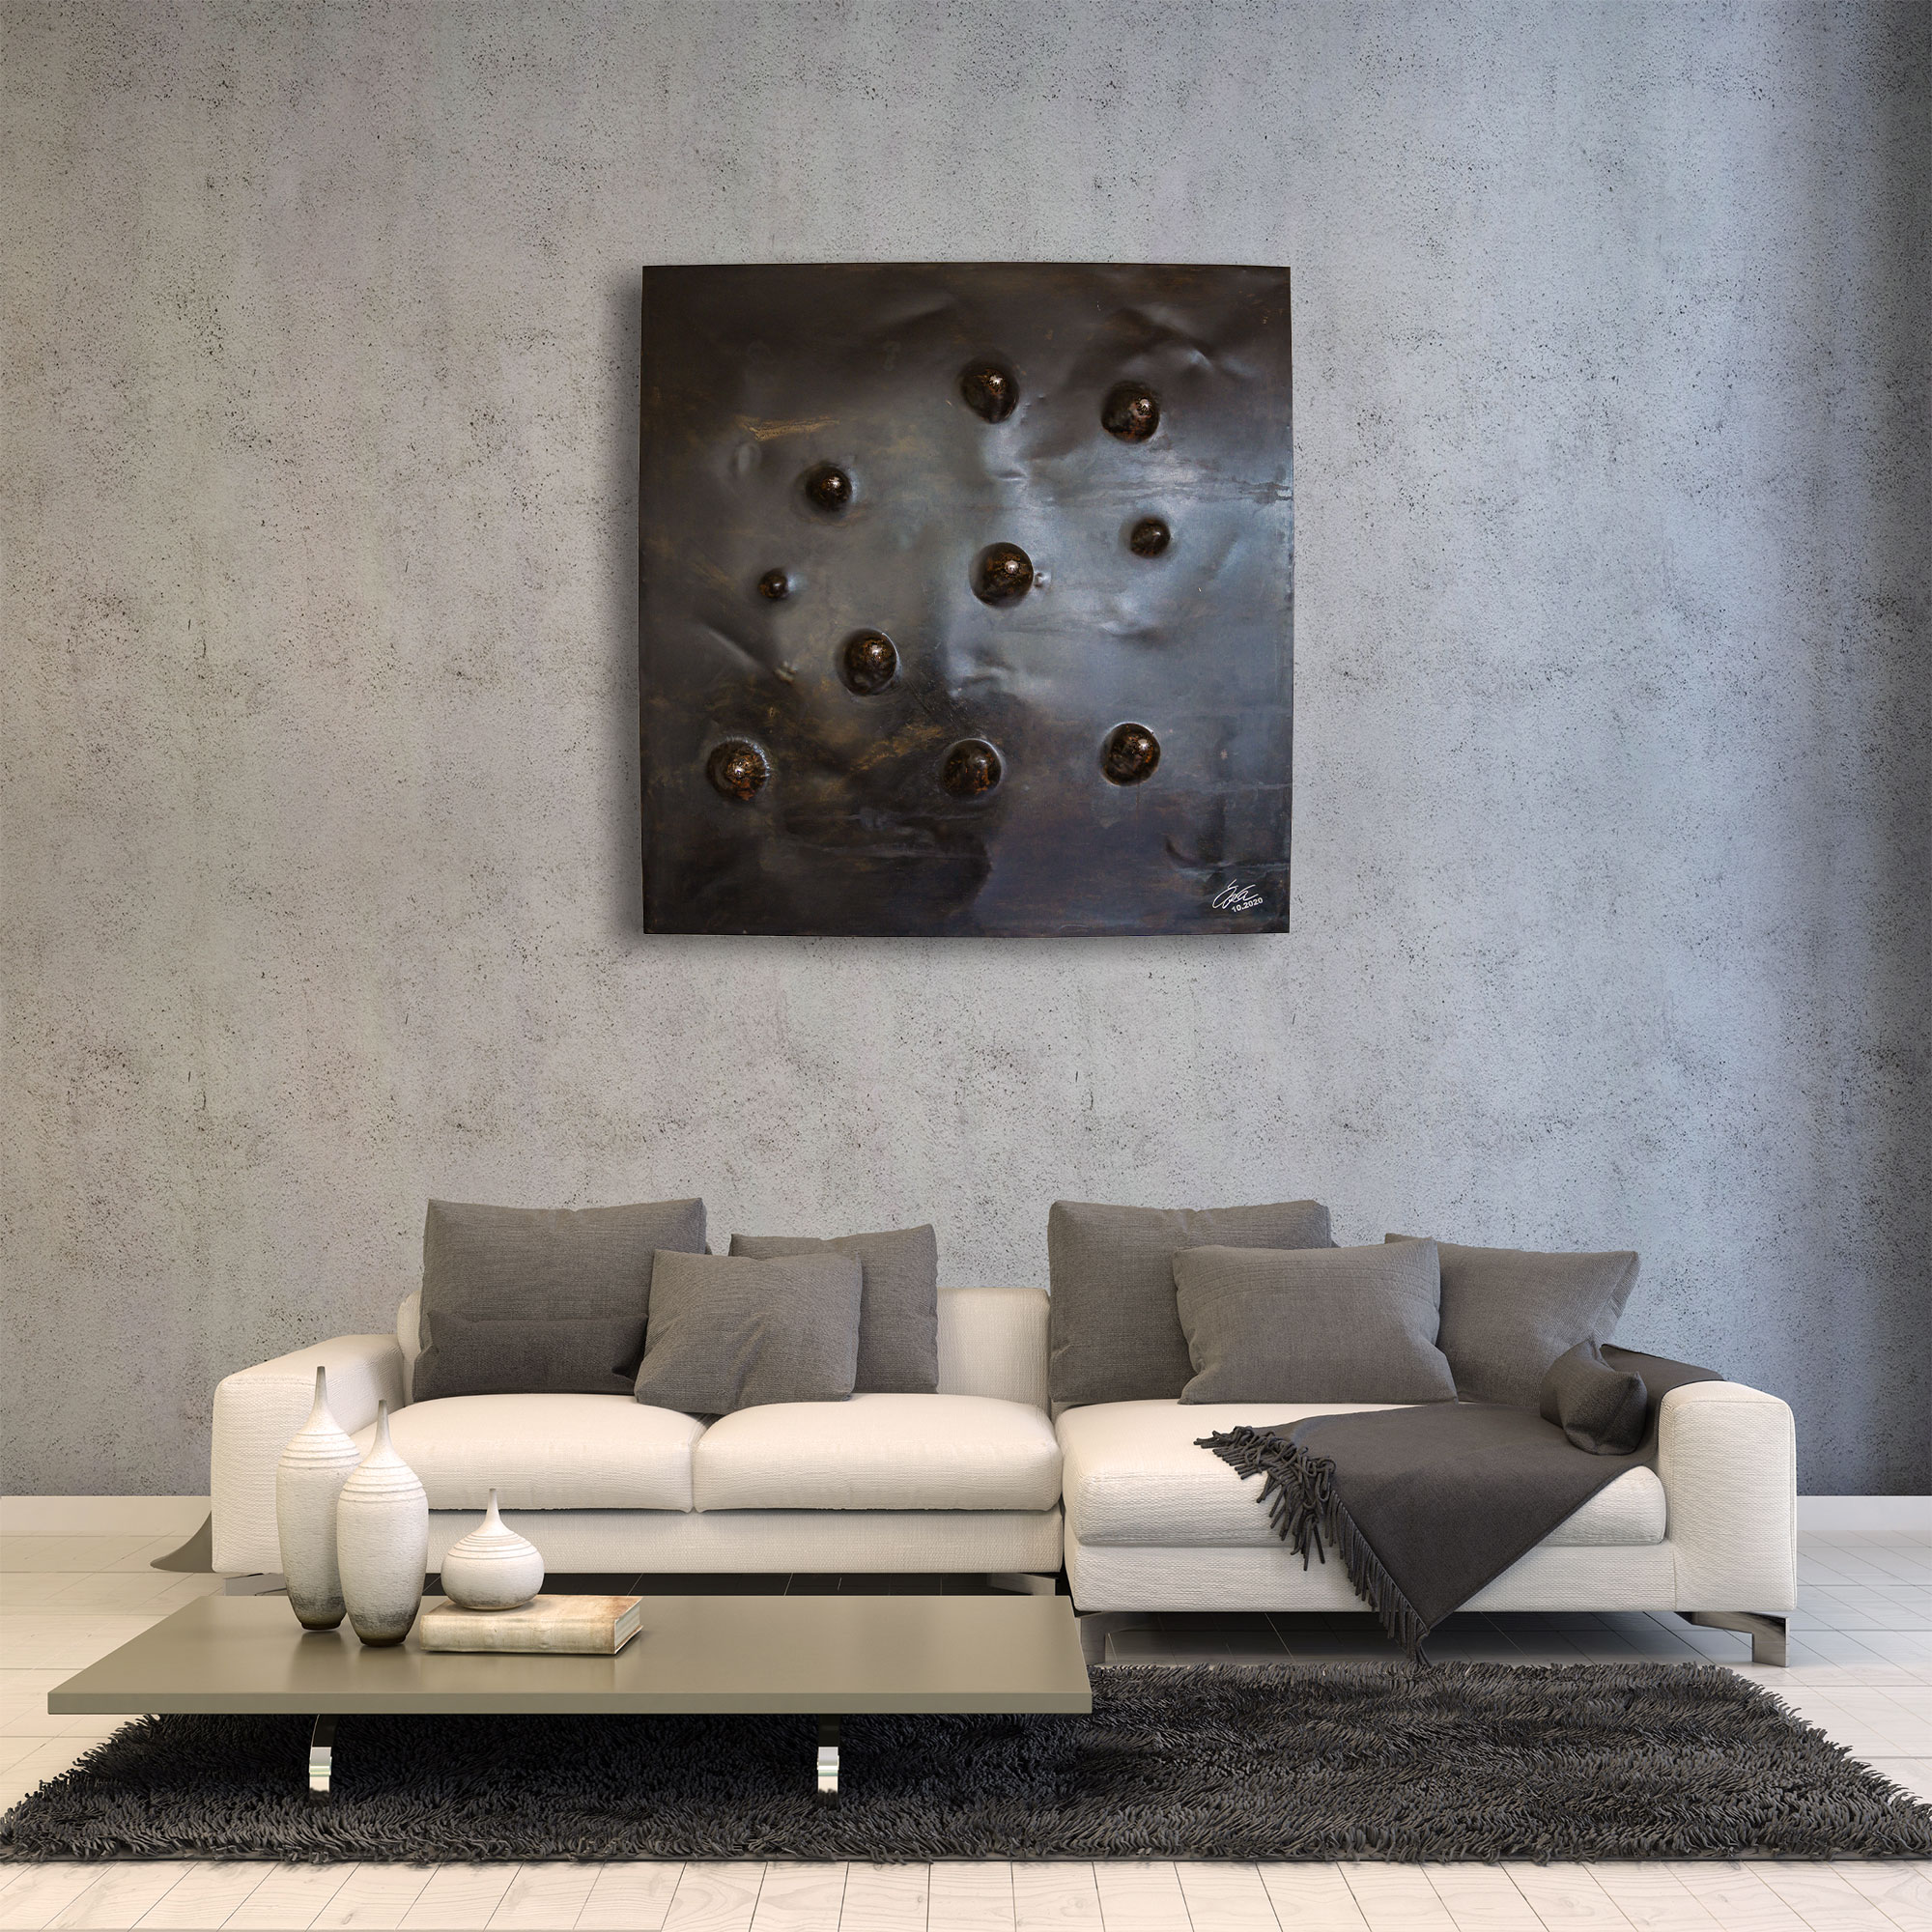 Stahlbild bzw. Bild aus Metall mit dem Namen "45°" aus der Reihe Kugeln von Daniel Springer. Hier in einem Wohnzimmer